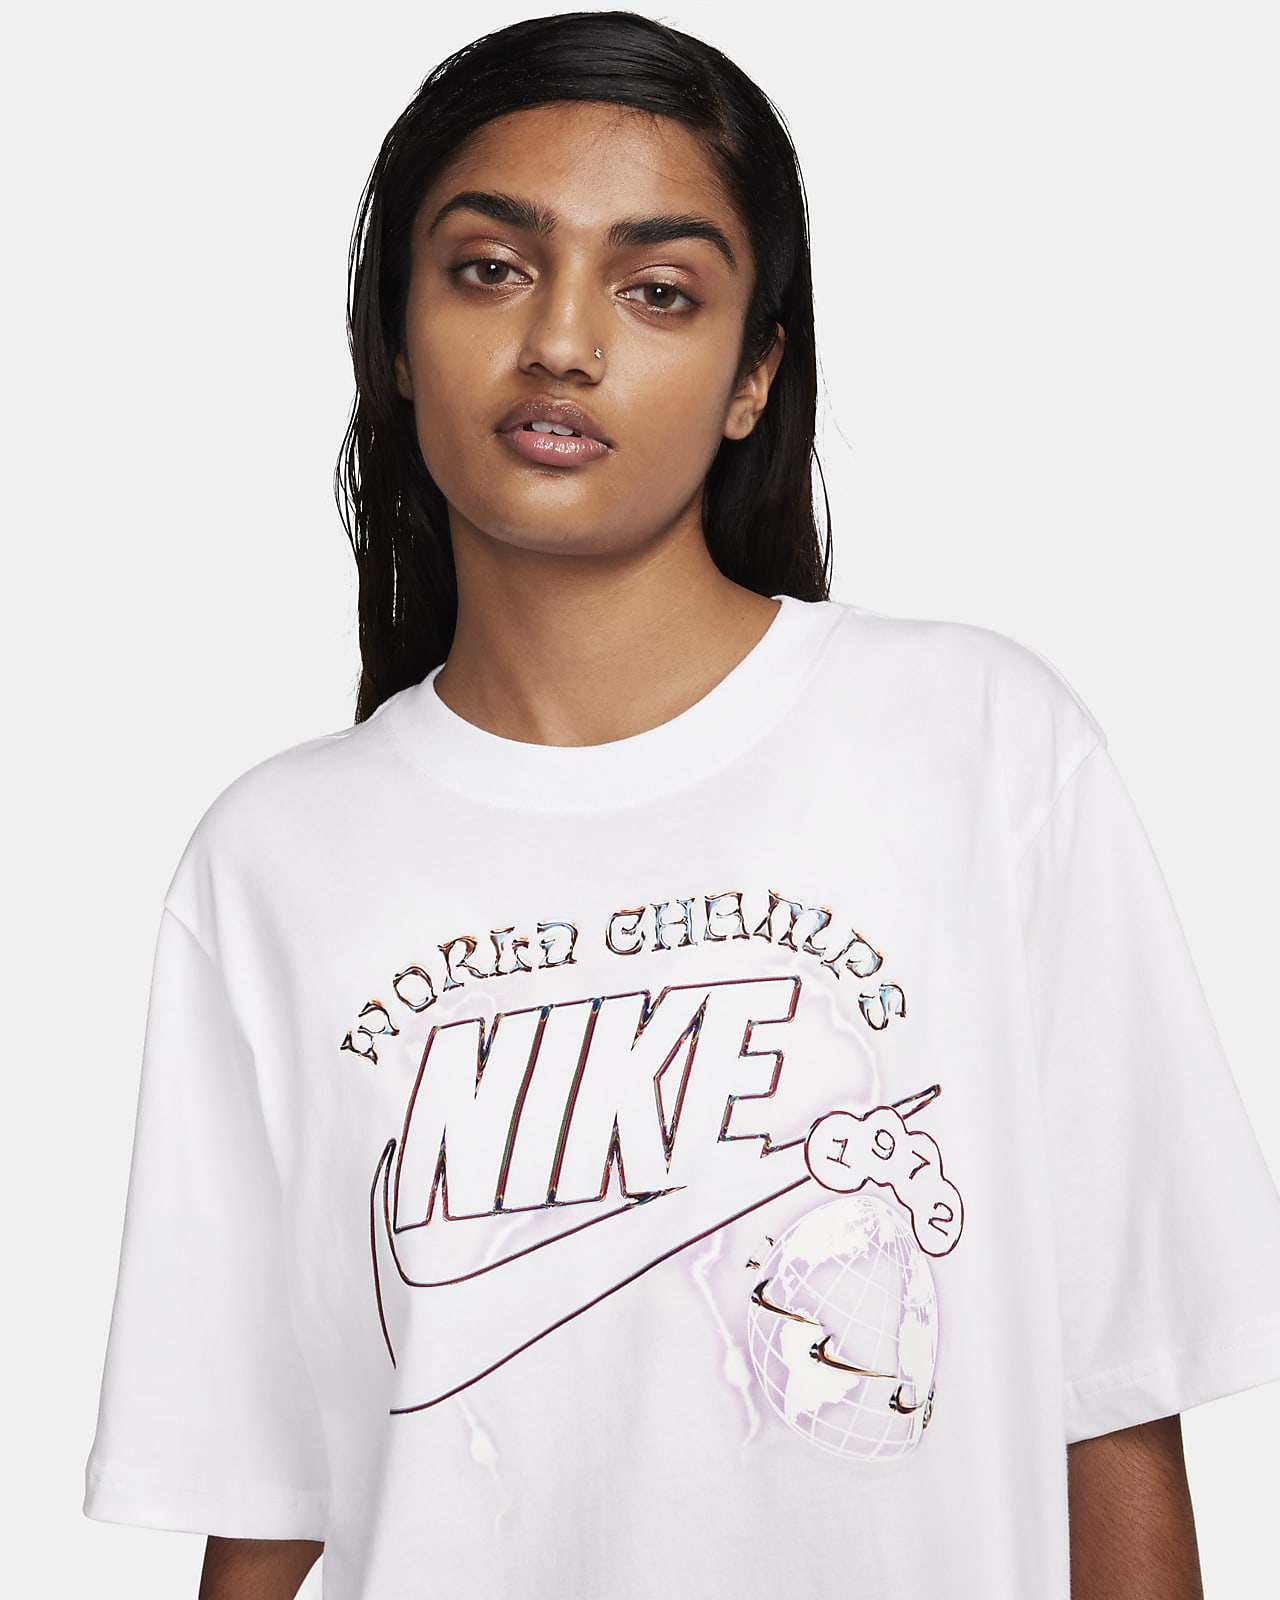 T-shirts pour Femme. Hauts de Sport et Lifestyle pour Femme. Nike FR